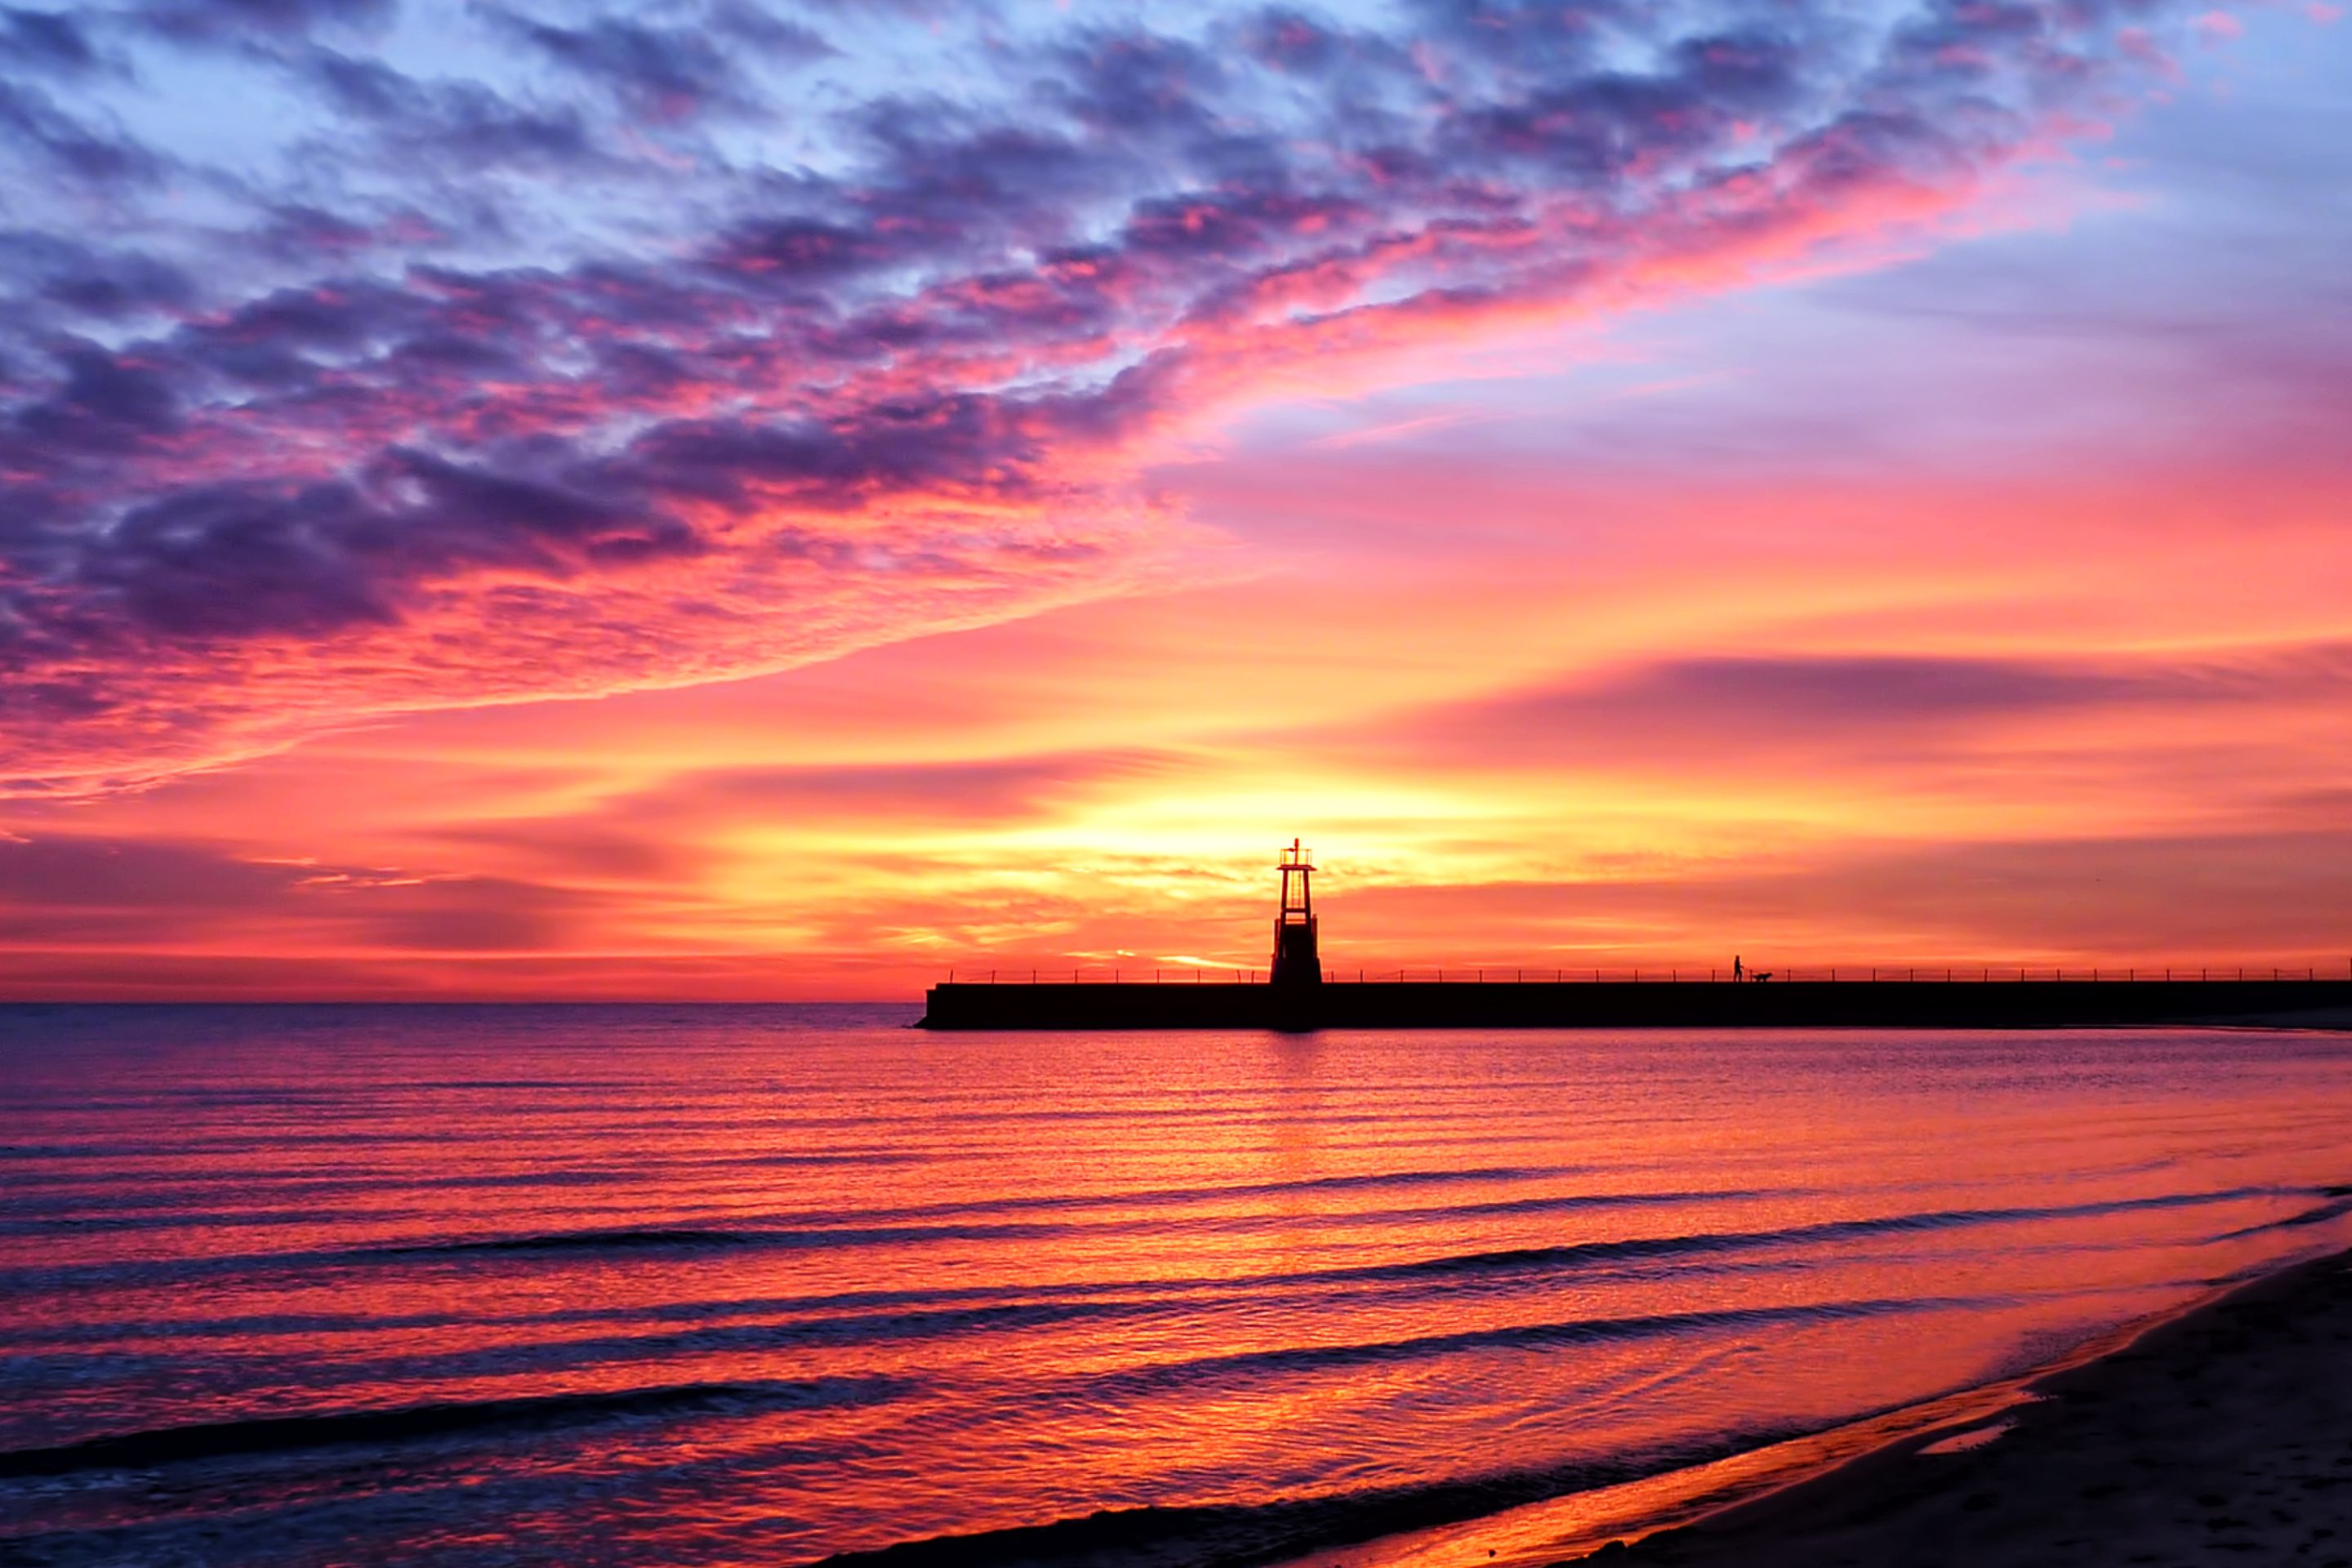 Обои Lighthouse And Red Sunset Beach 2880x1920